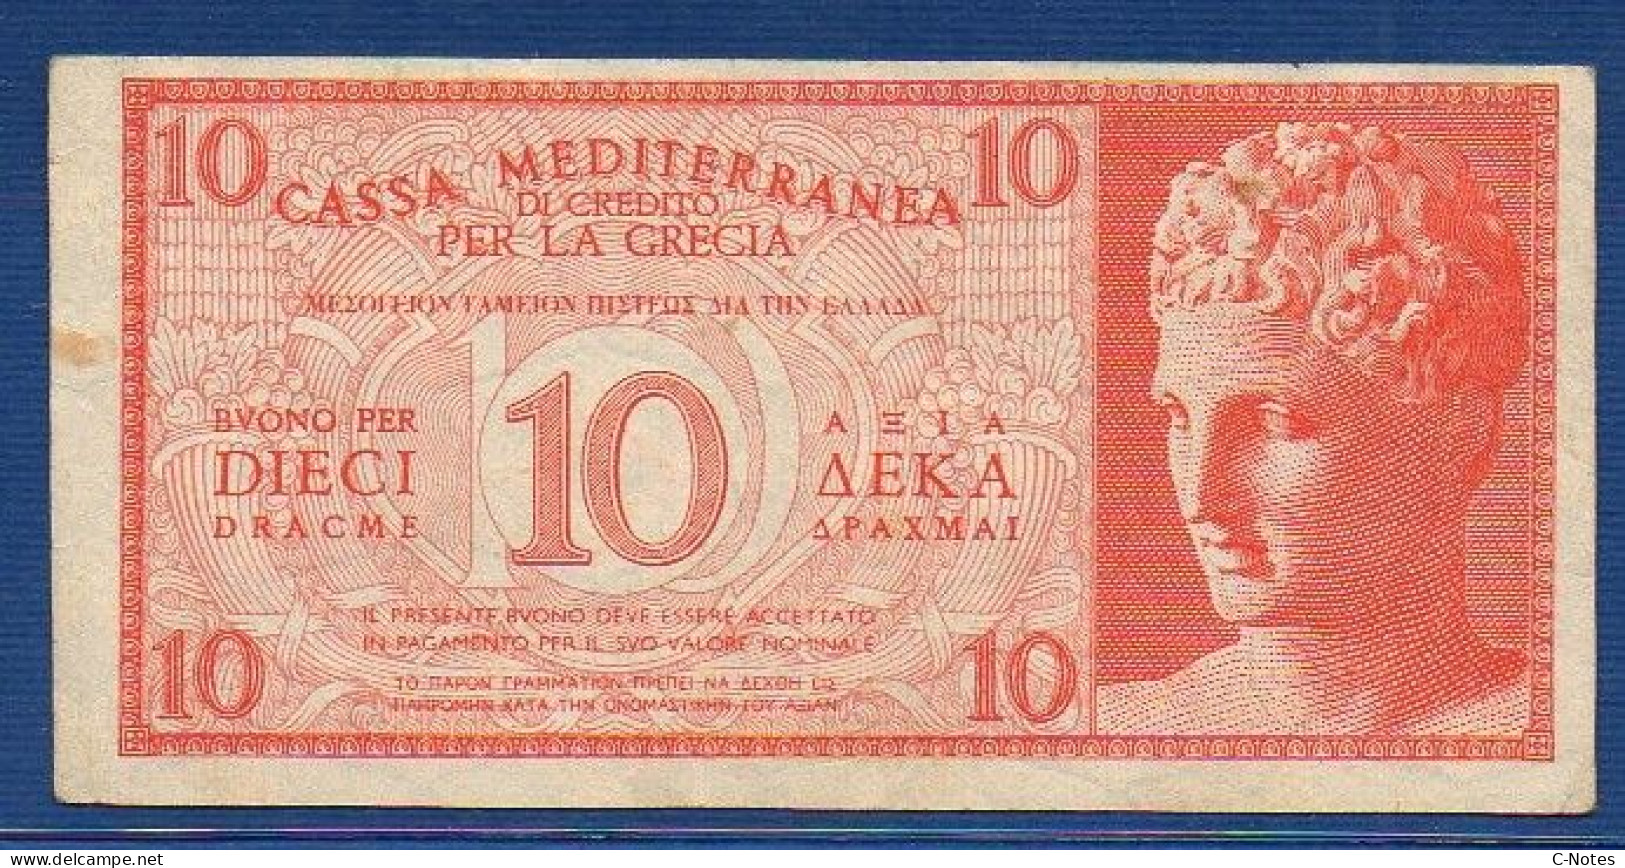 GREECE - Cassa Mediterranea Di Credito - P.M2 – 10 DRACME ND 1941 - CIRCULATED - SERIE 0002 636716 - Ocupación Italiana Egenea